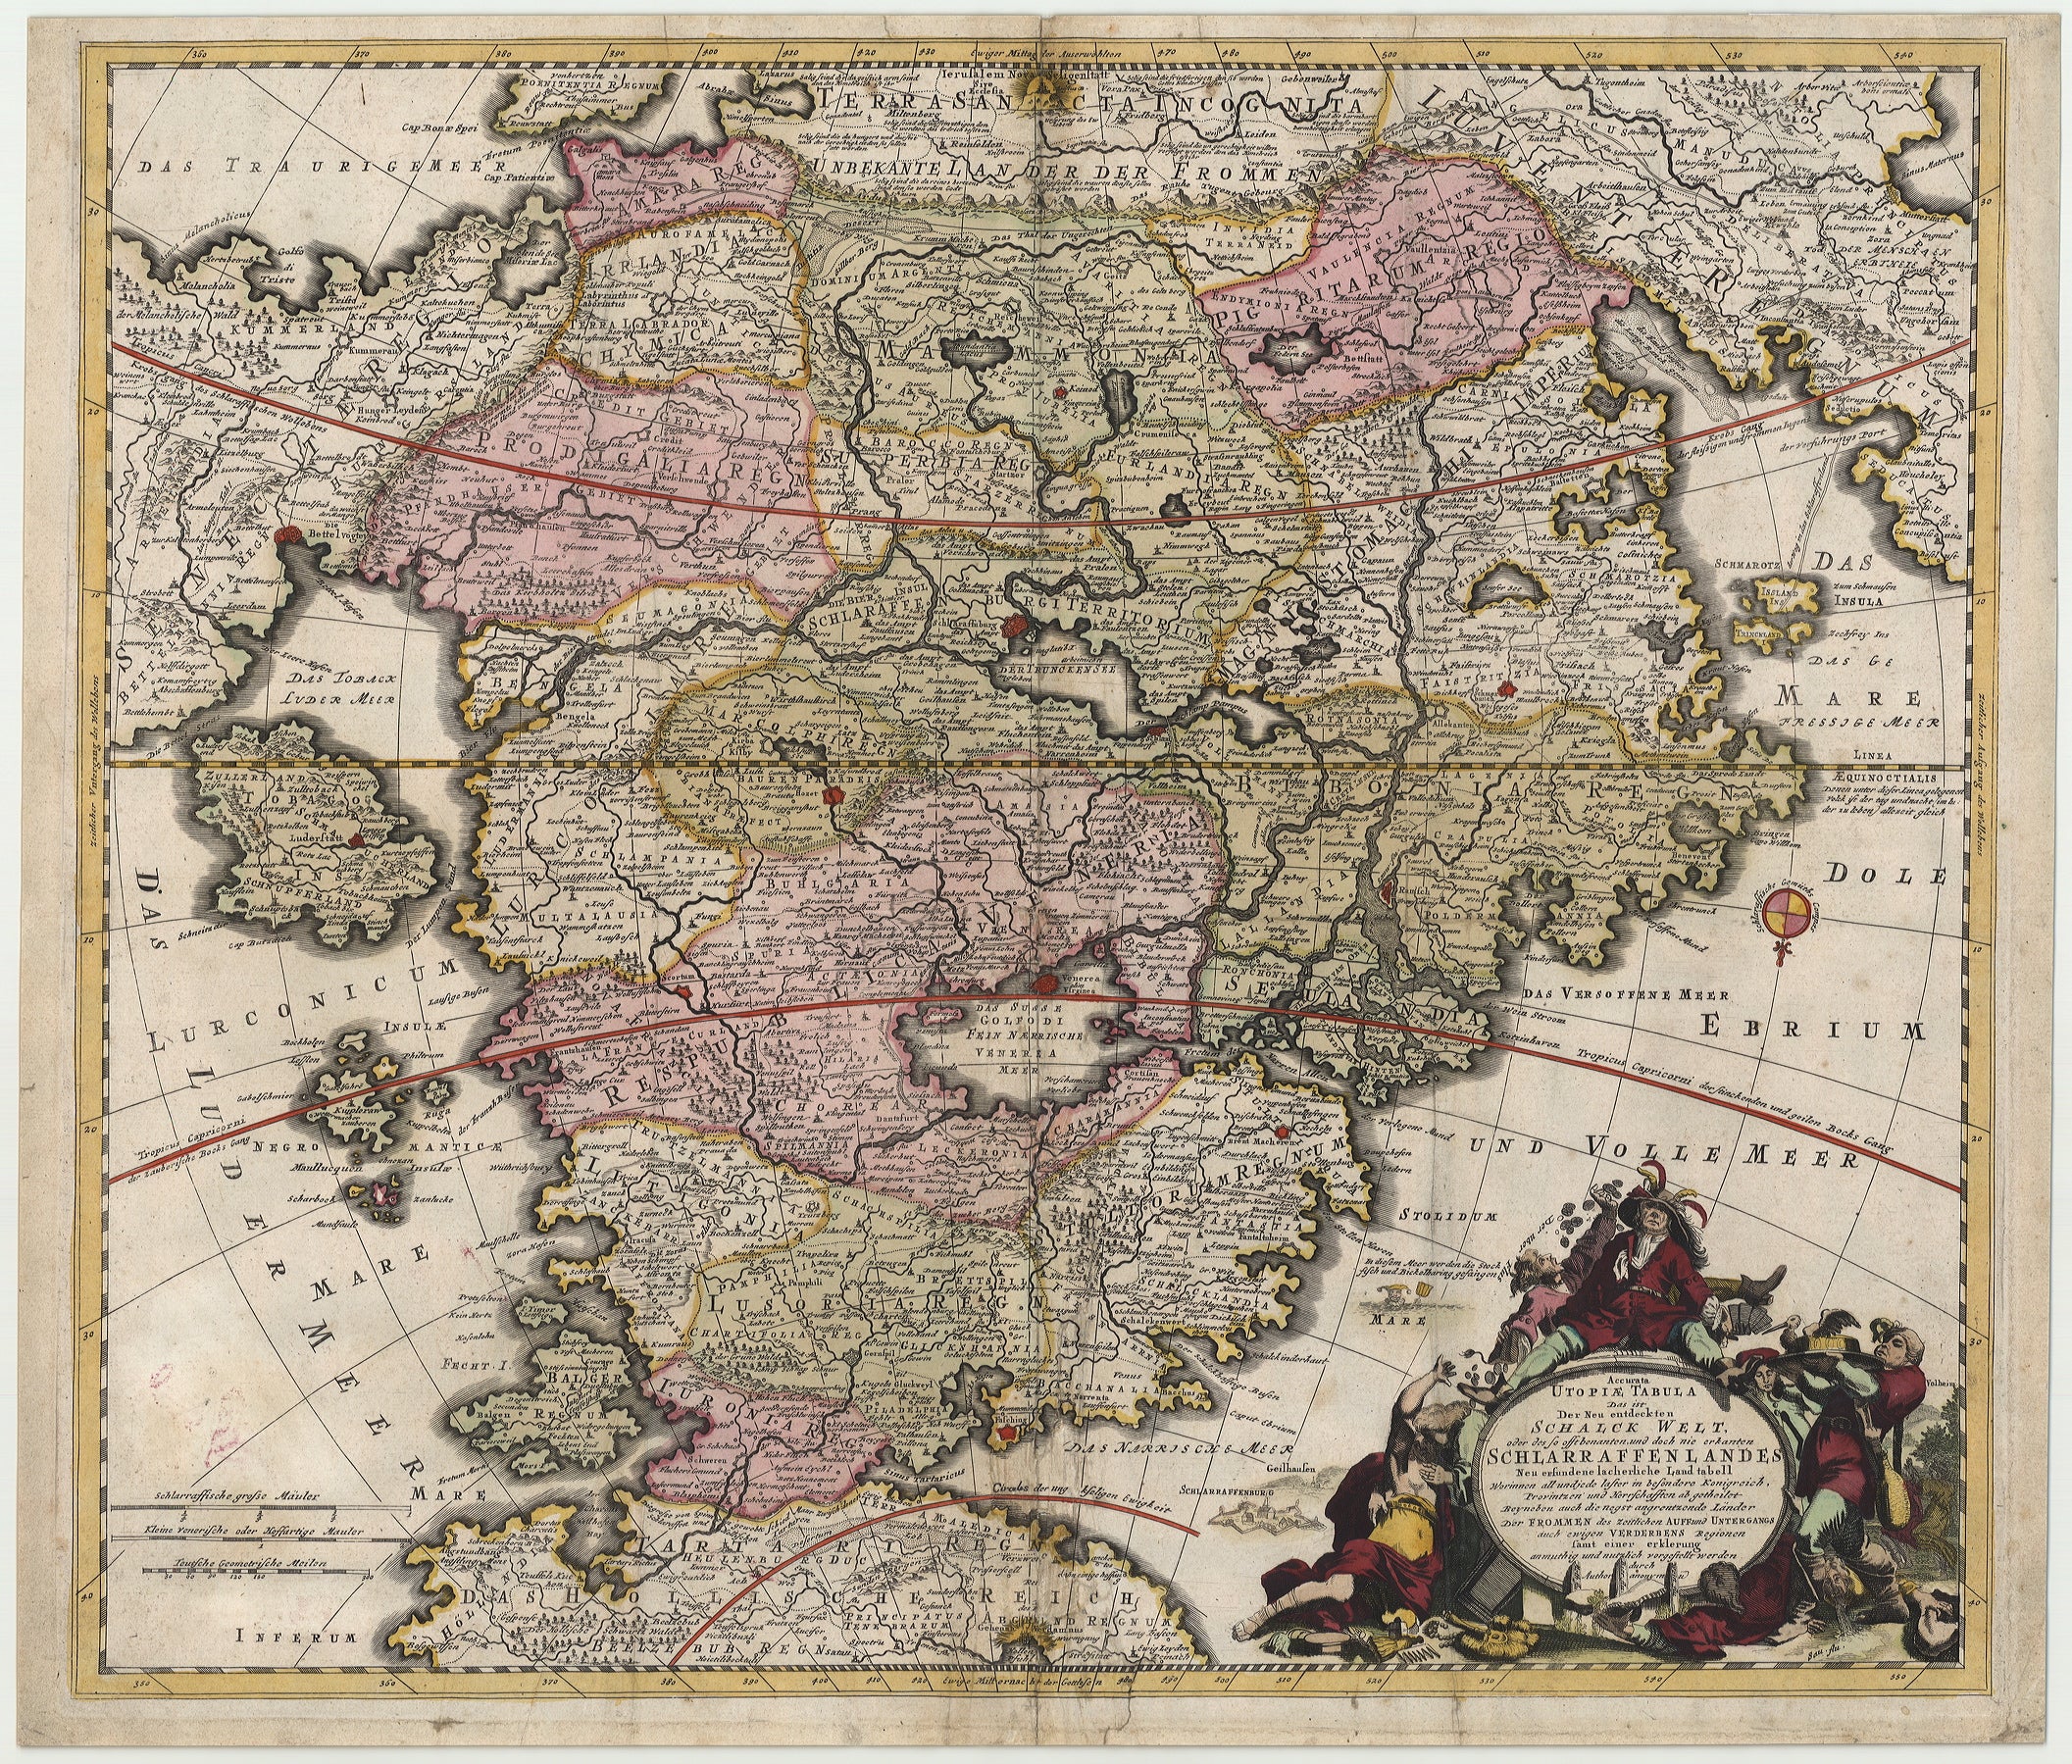 R3112  Homann, Johann Baptist: Accurata Utopia Tabula, Das ist Der Neu entdeckten Schalck Welt, oder des so offt benannten, und doch nie erkanten Schlarraffenlandes. 1700